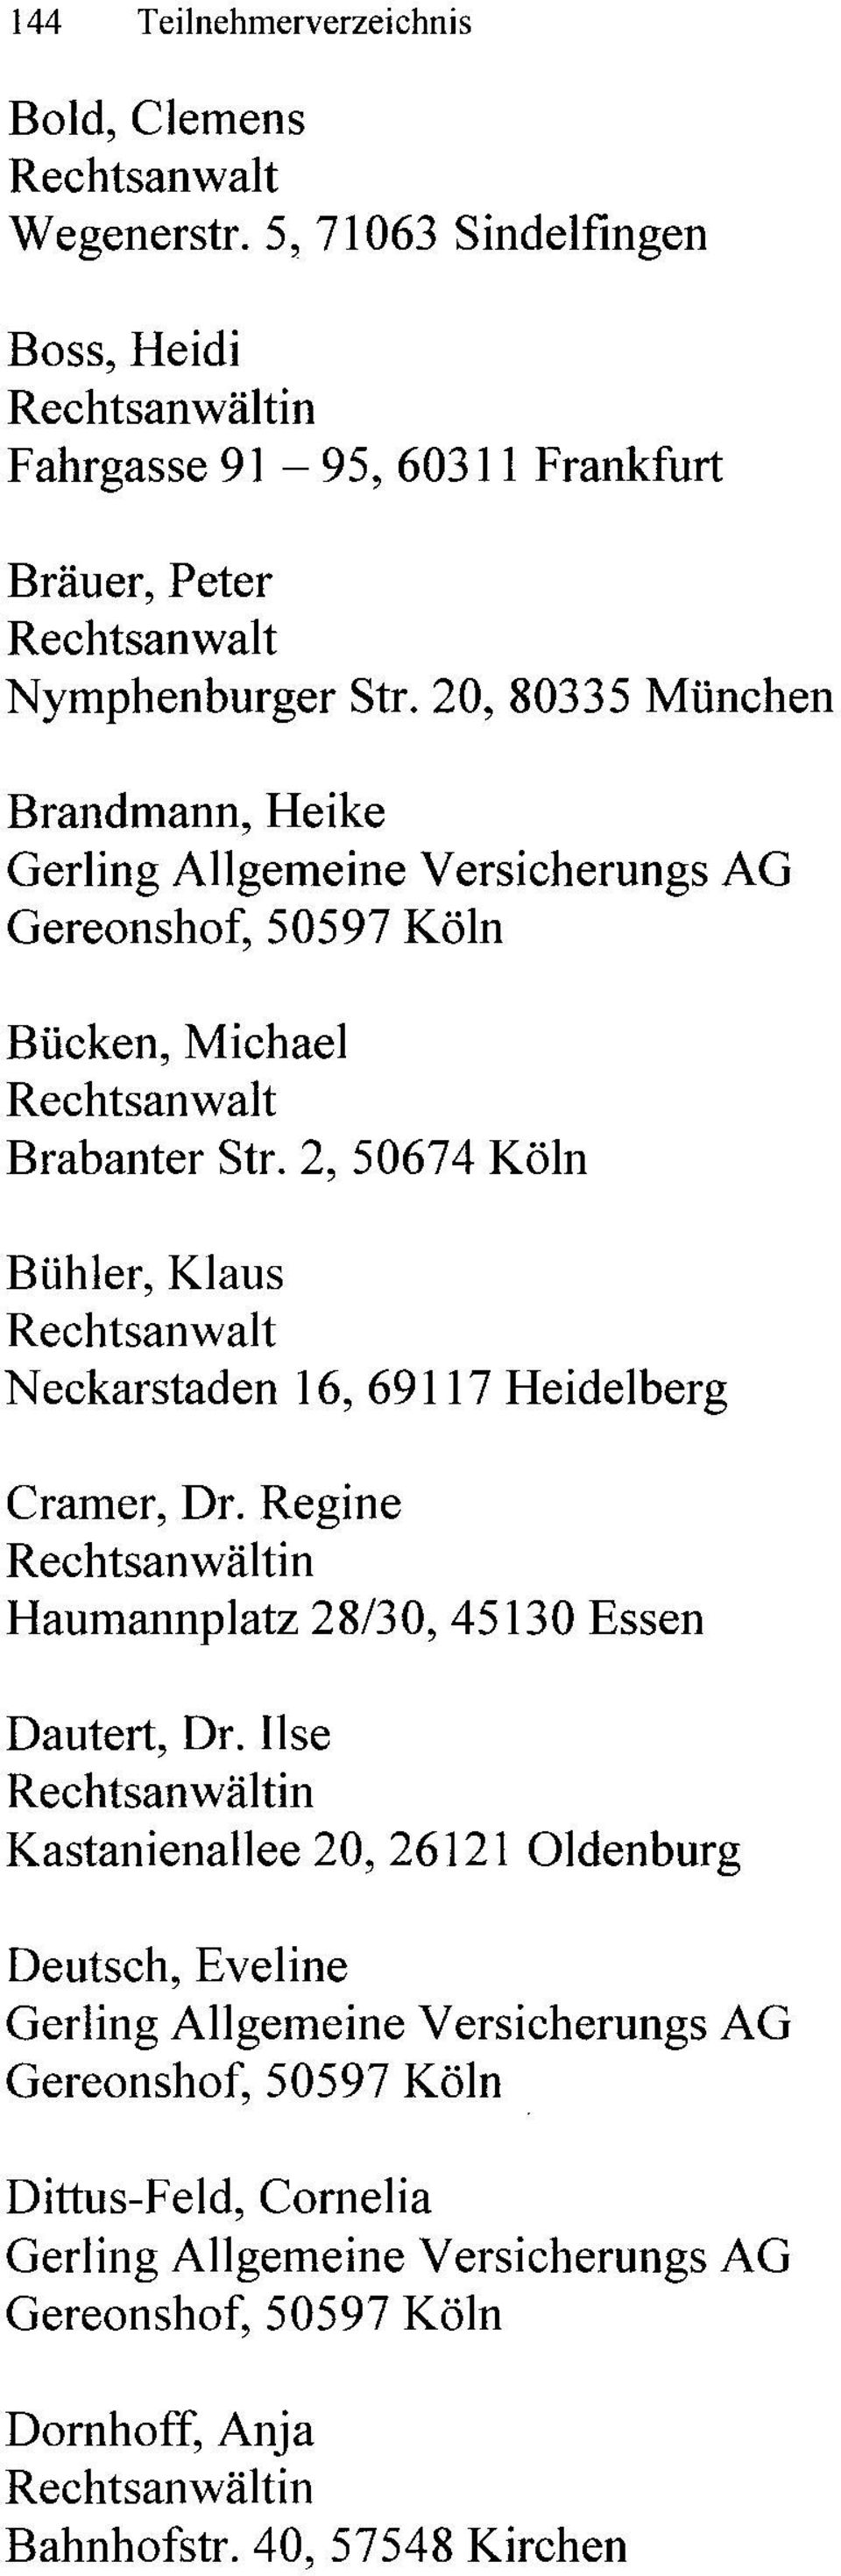 2, 50674 Köln Bühler, Klaus N eckarstaden 16, 69117 Heidelberg Cramer, Dr. Regine Haumannplatz 28/30, 45130 Essen Dautert, Dr.